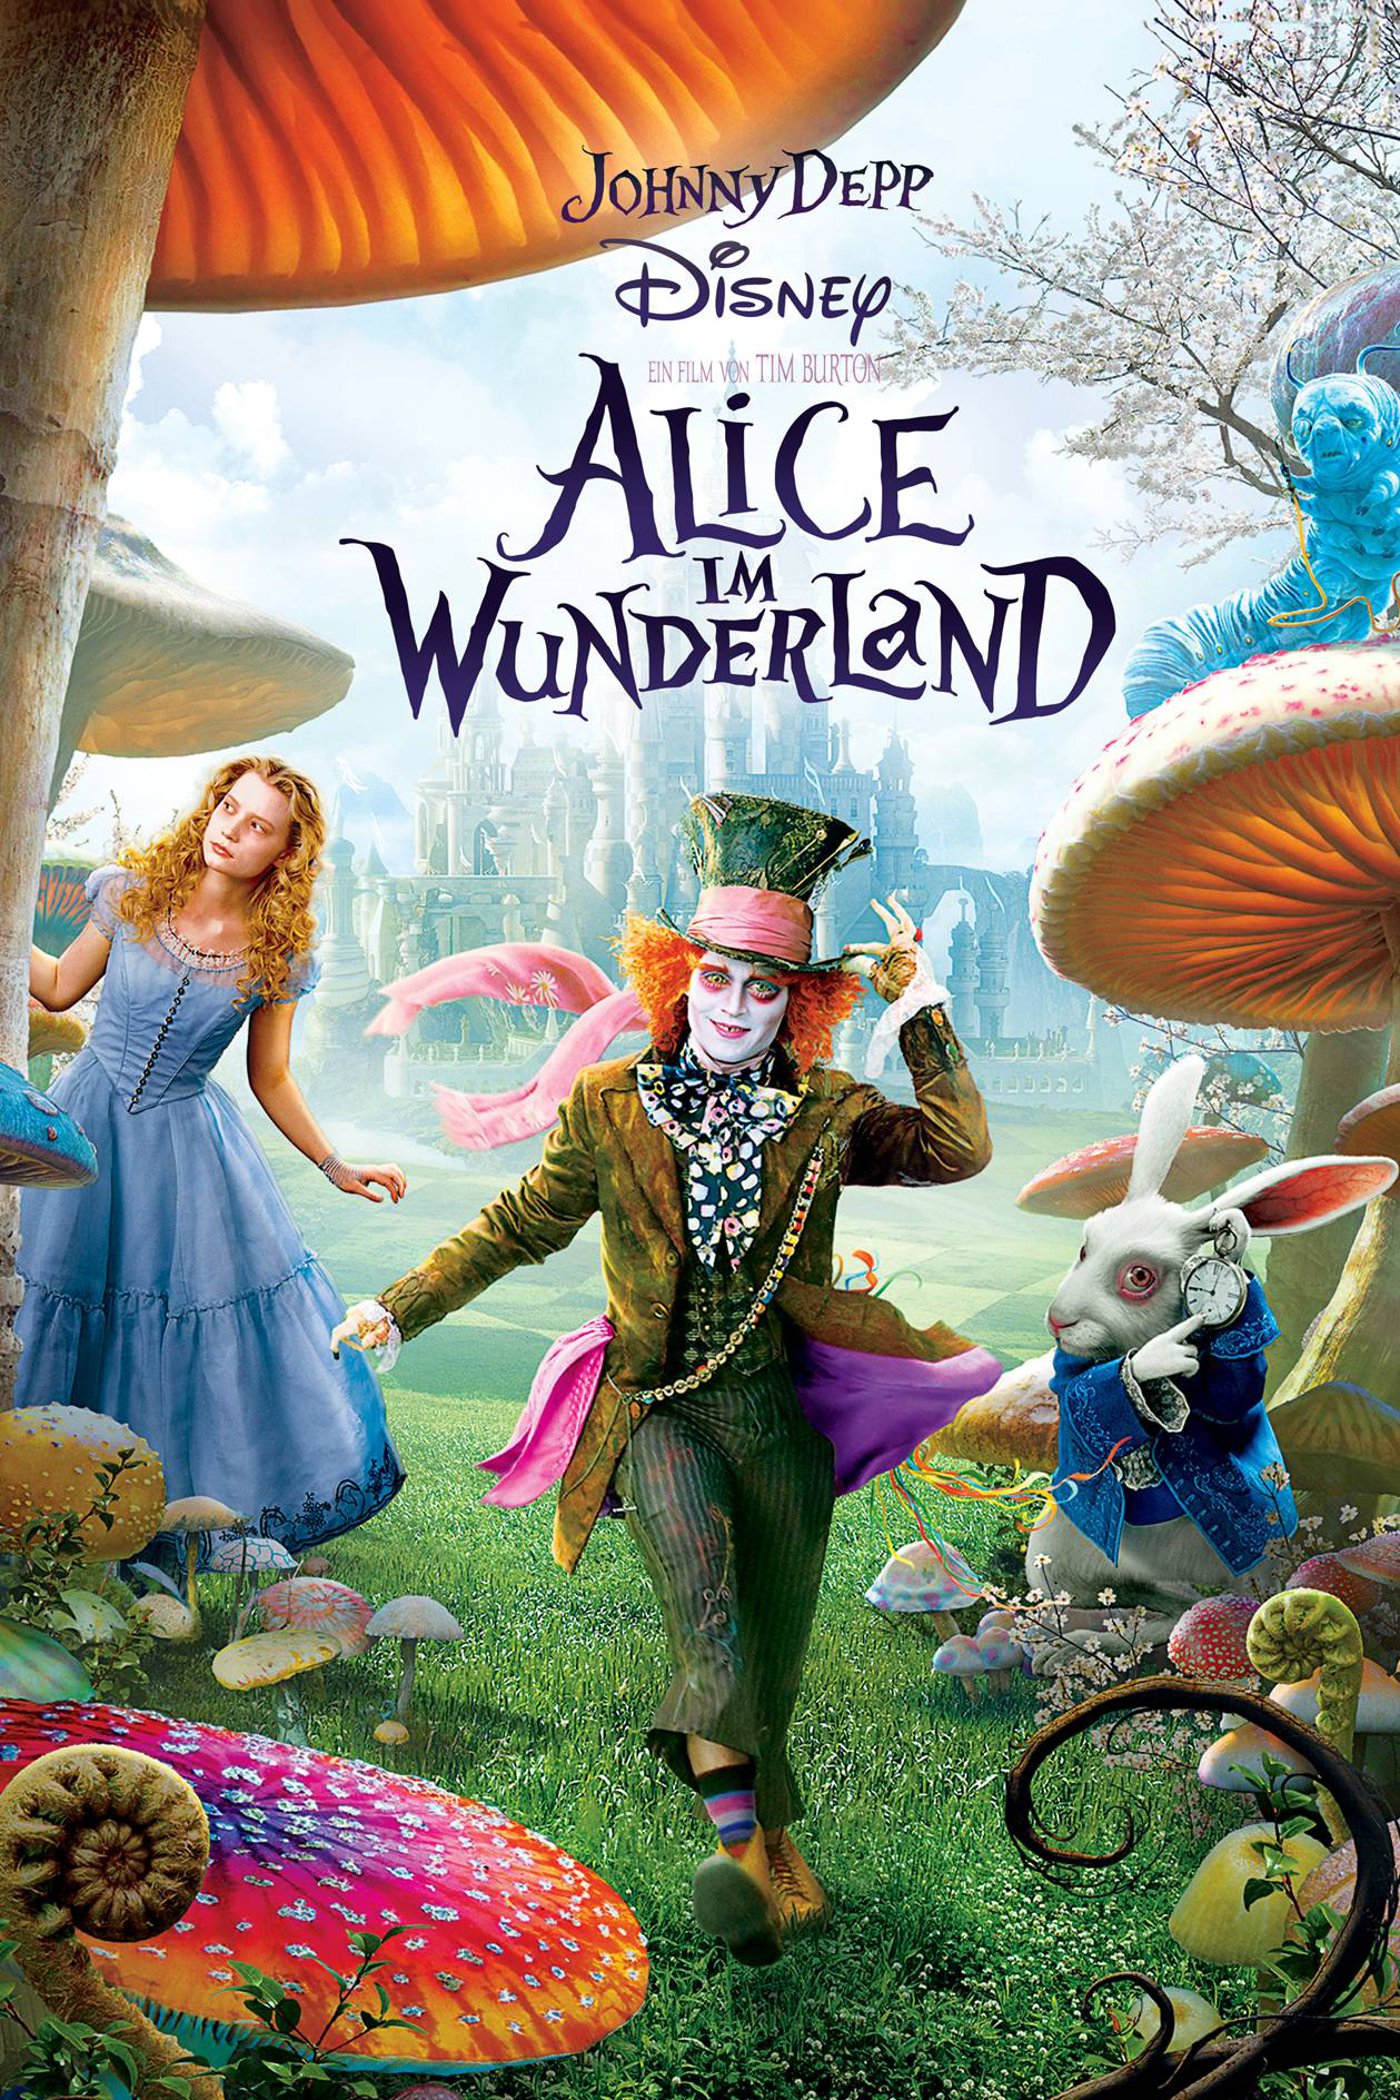 Plakat von "Alice im Wunderland"